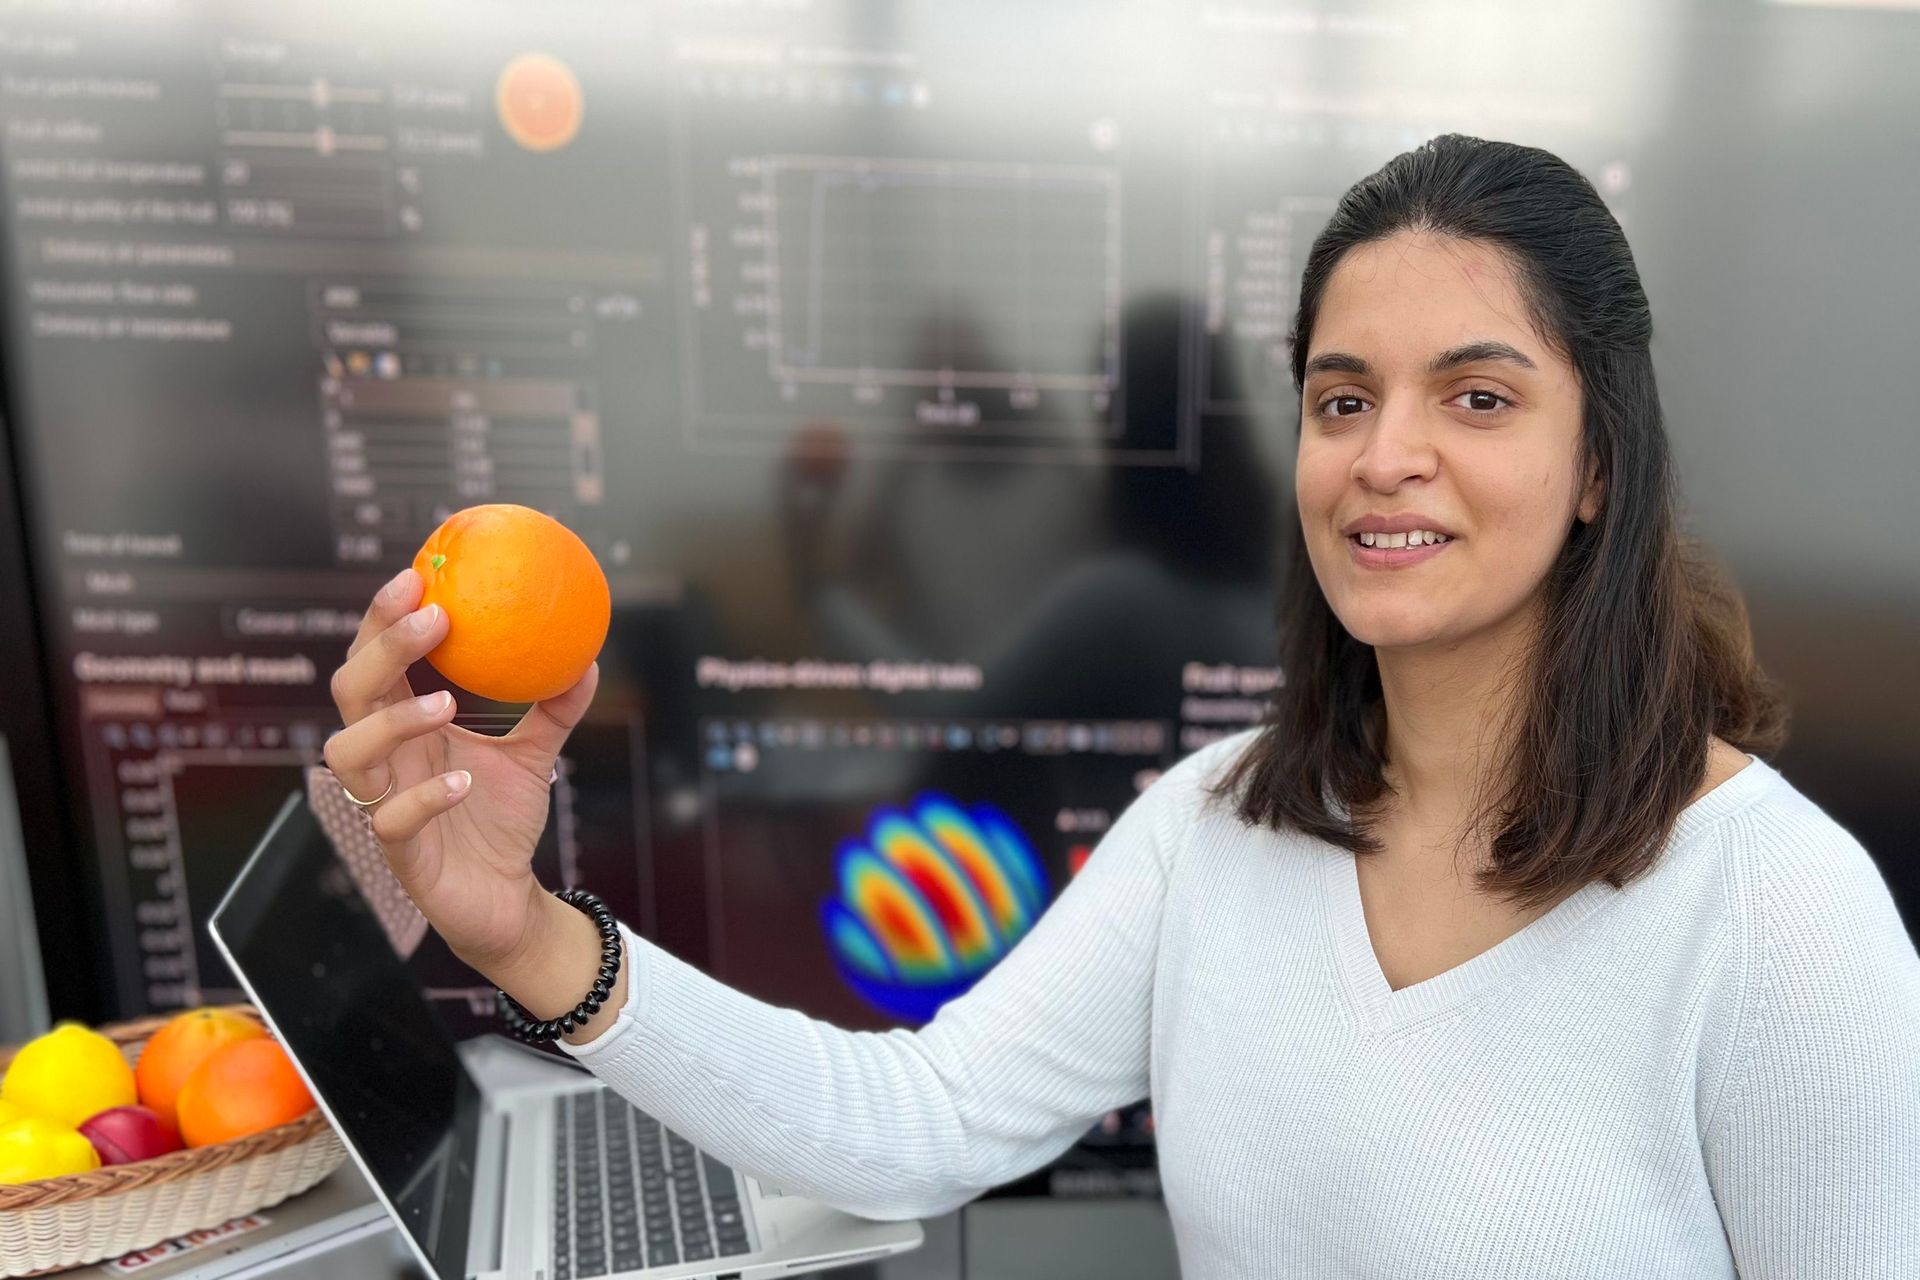 Chandrima Shrivastava è una ricercatrice del Laboratorio di Membrane Biomimetiche e Tessili dell'EMPA di San Gallo impegnata nello studio di “gemelli digitali” e “gemelli biofisici” utili a monitorare e migliorare la conservazione della frutta